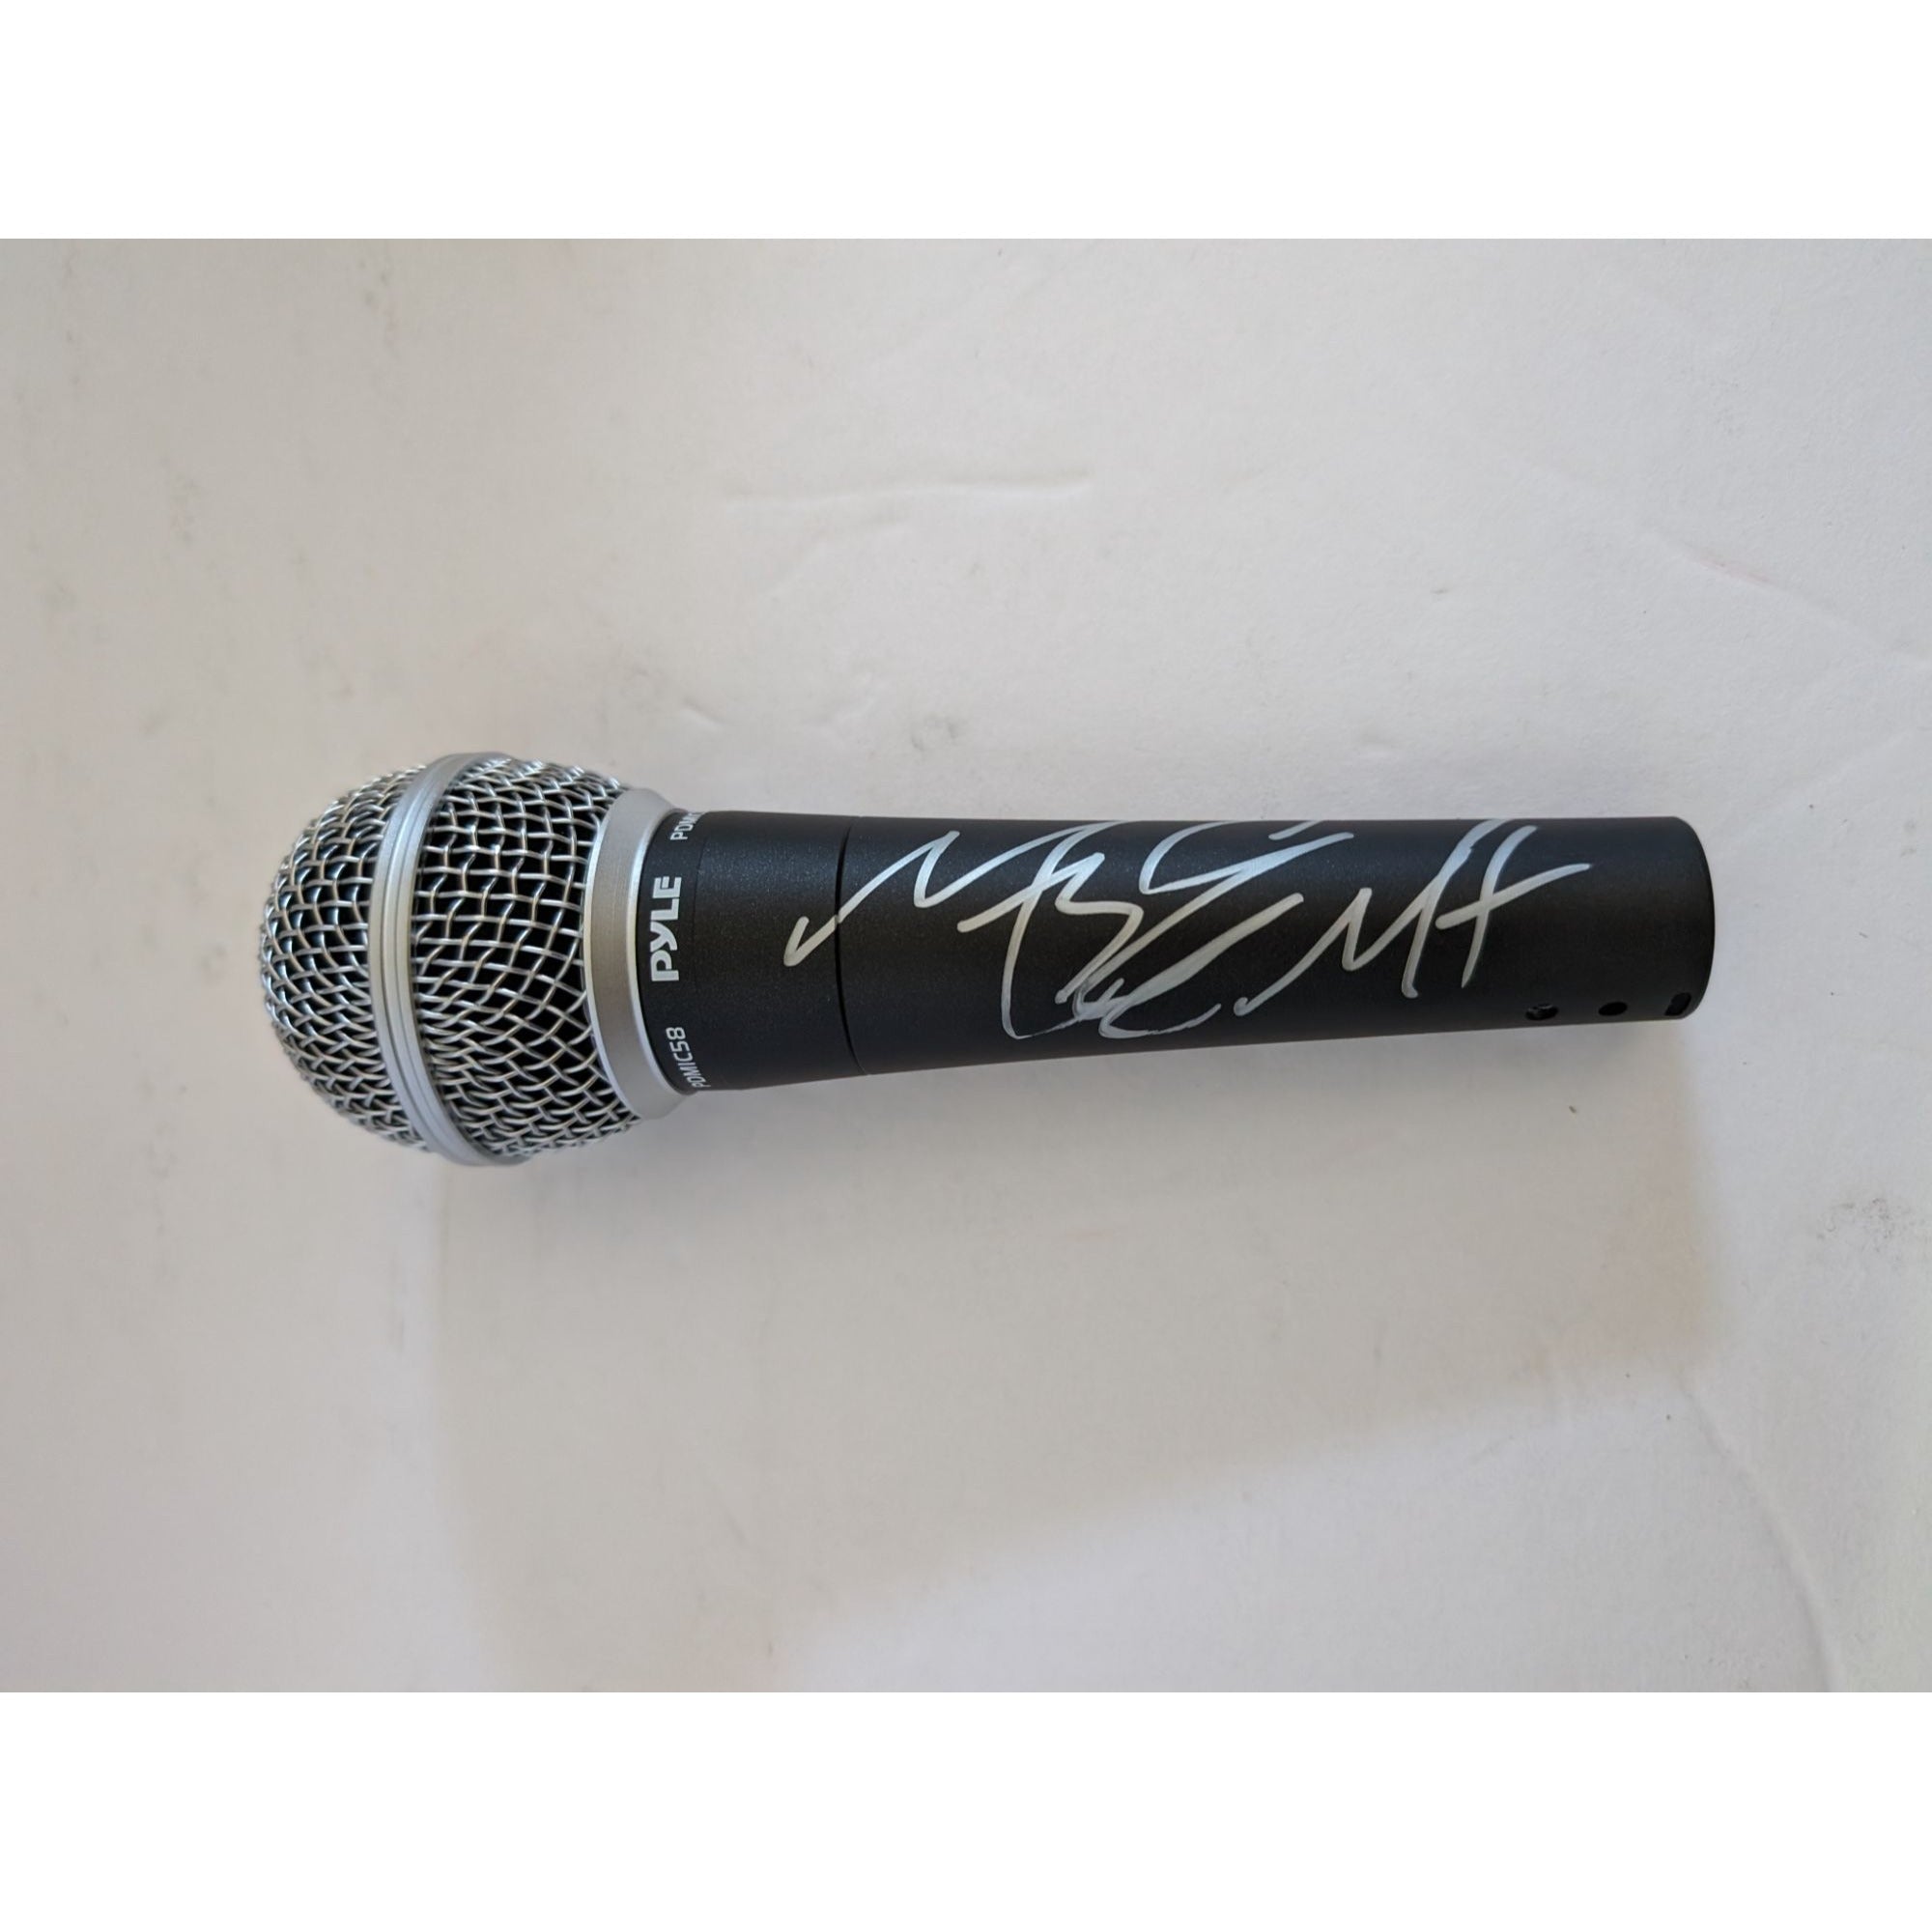 Melissa Arnette Elliott 'Missy Elliott' microphone signed with proof